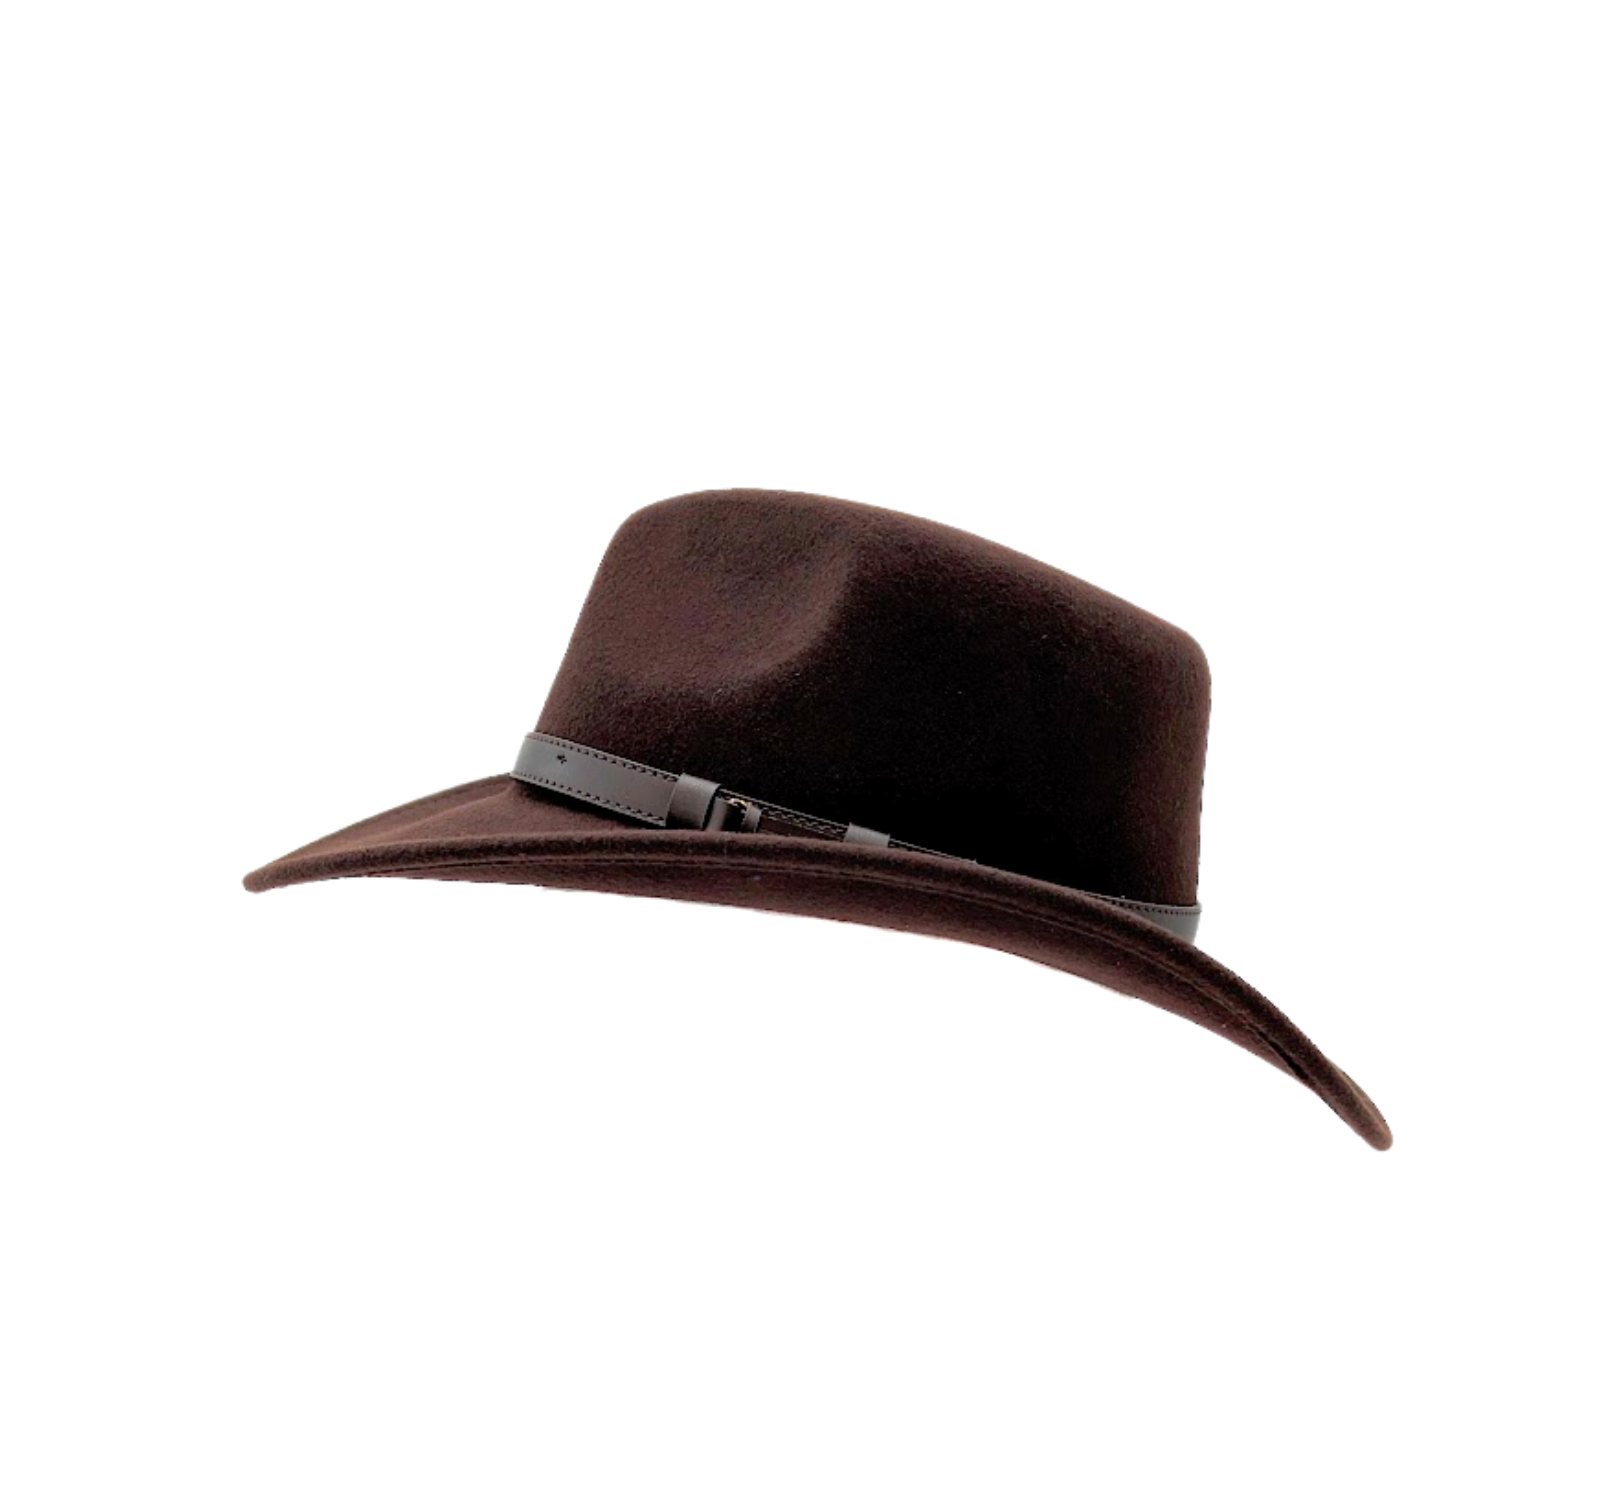 Stansmore Wide Brim Cowboy Hat